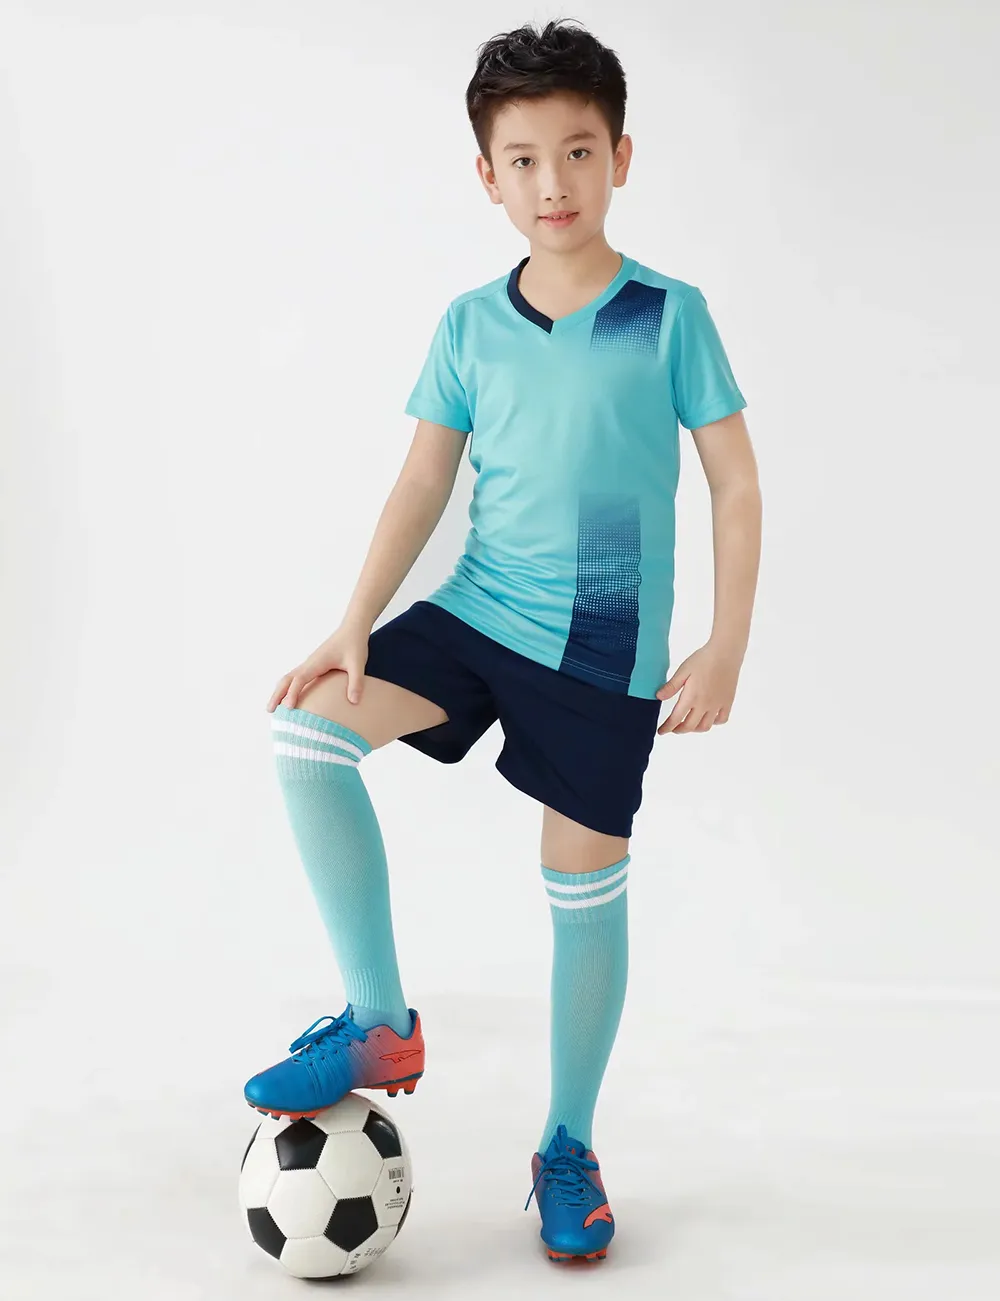 Jessie_Kicks # G470 Aiir Foorce 1 Tasarım 2021 Moda Formalar Çocuk Giyim Ourtdoor Spor